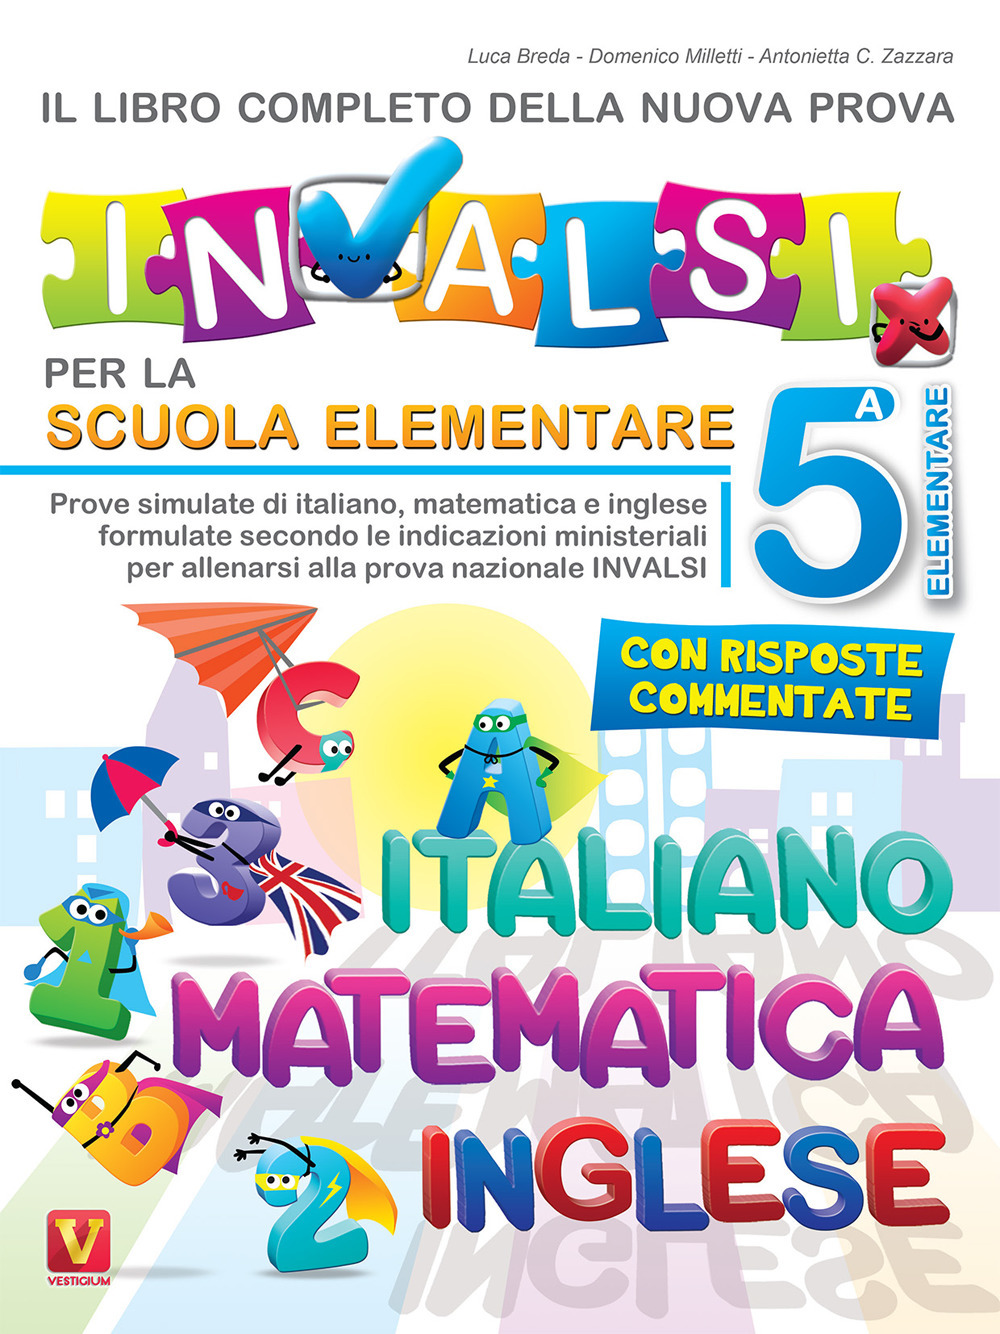 Image of Il libro completo della nuova prova INVALSI per la scuola elementare. 5ª elementare. Italiano, matematica e inglese